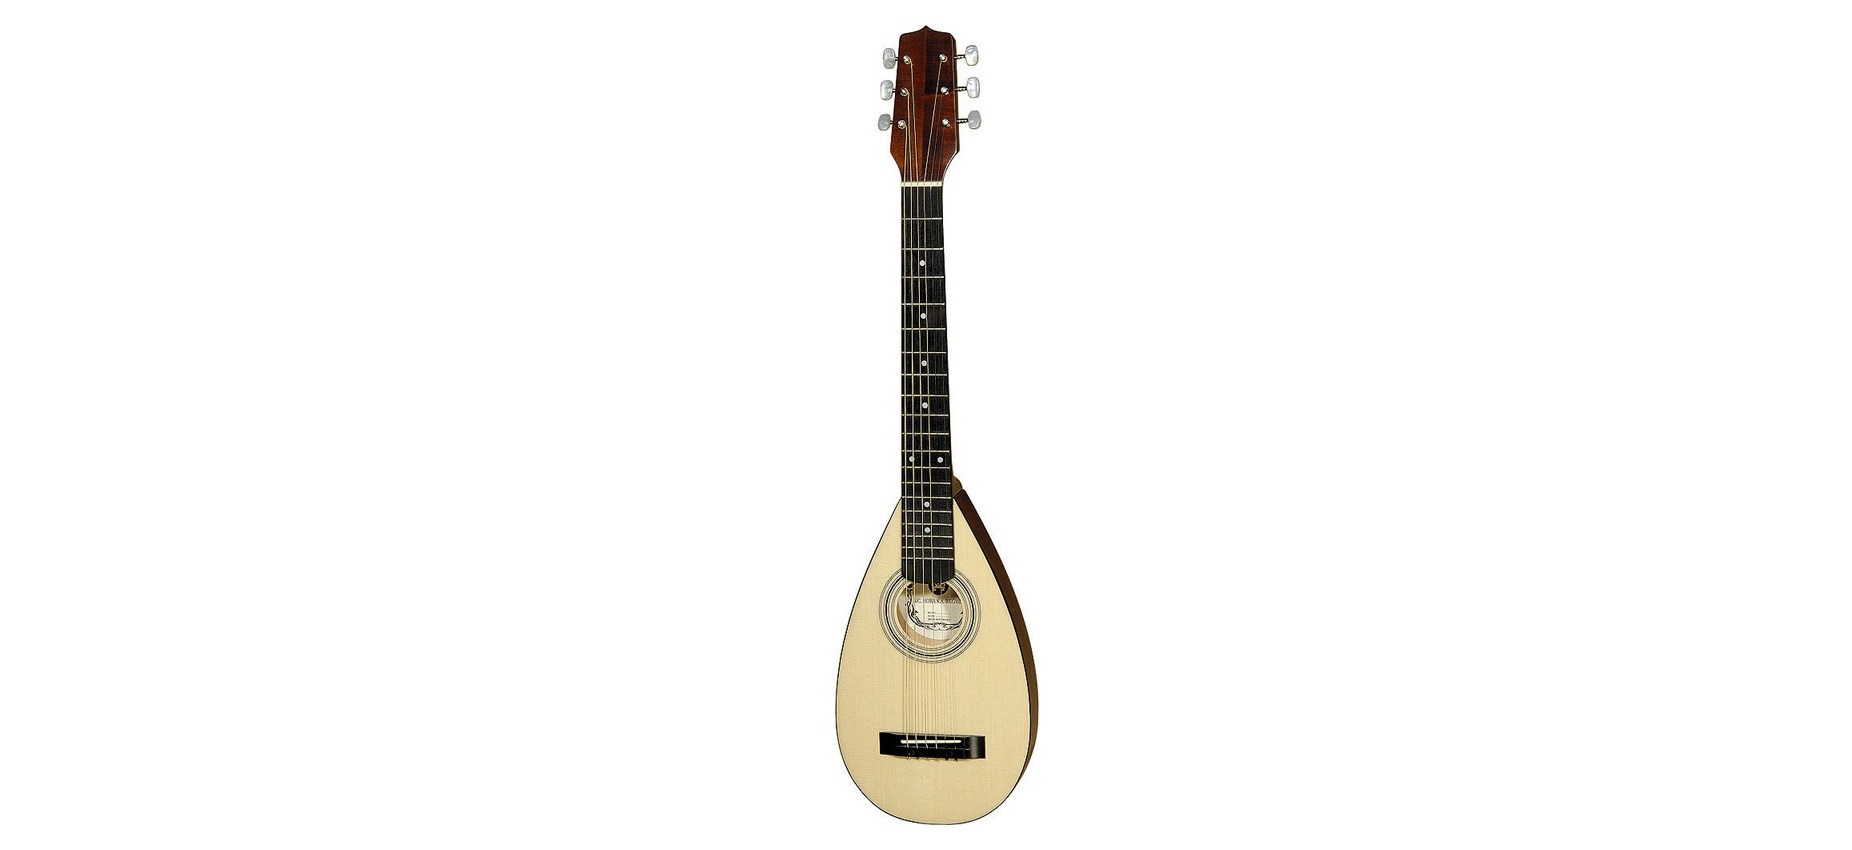 Тревел-гитара Hora S1125 Travel - идеальный инструмент для путешествий.